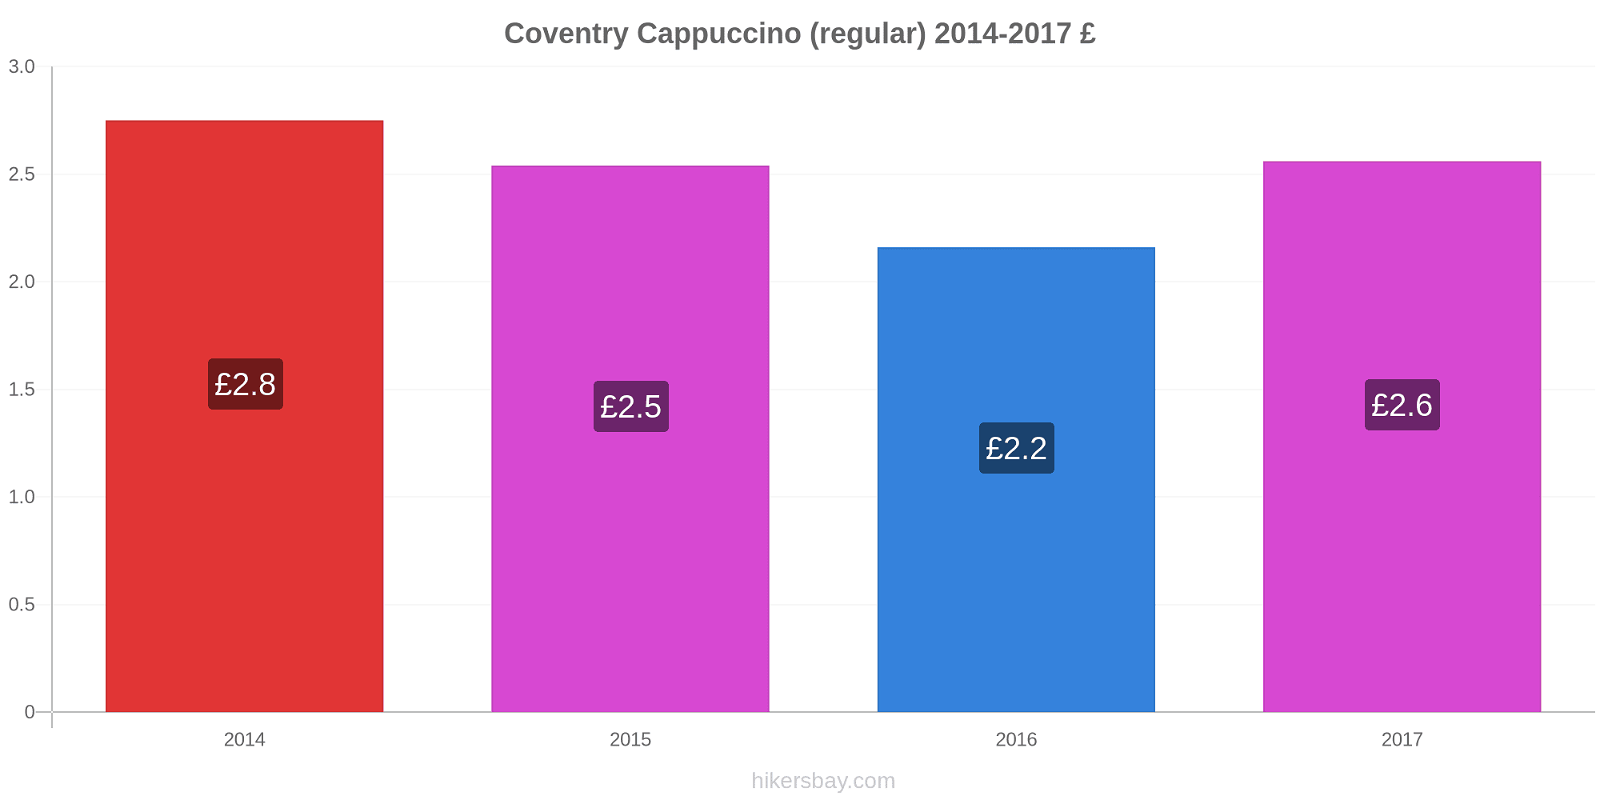 Coventry variação de preço Capuccino (regular) hikersbay.com